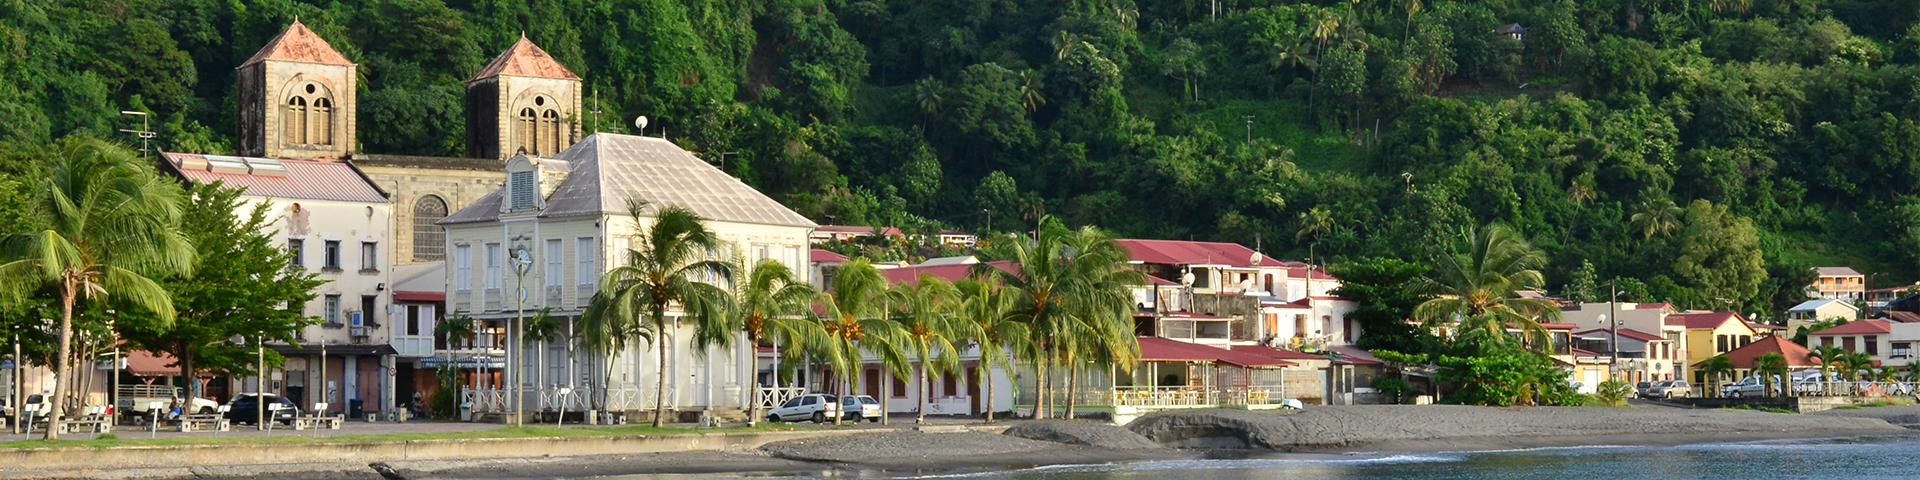 Martinique- Le Lamentin - banner